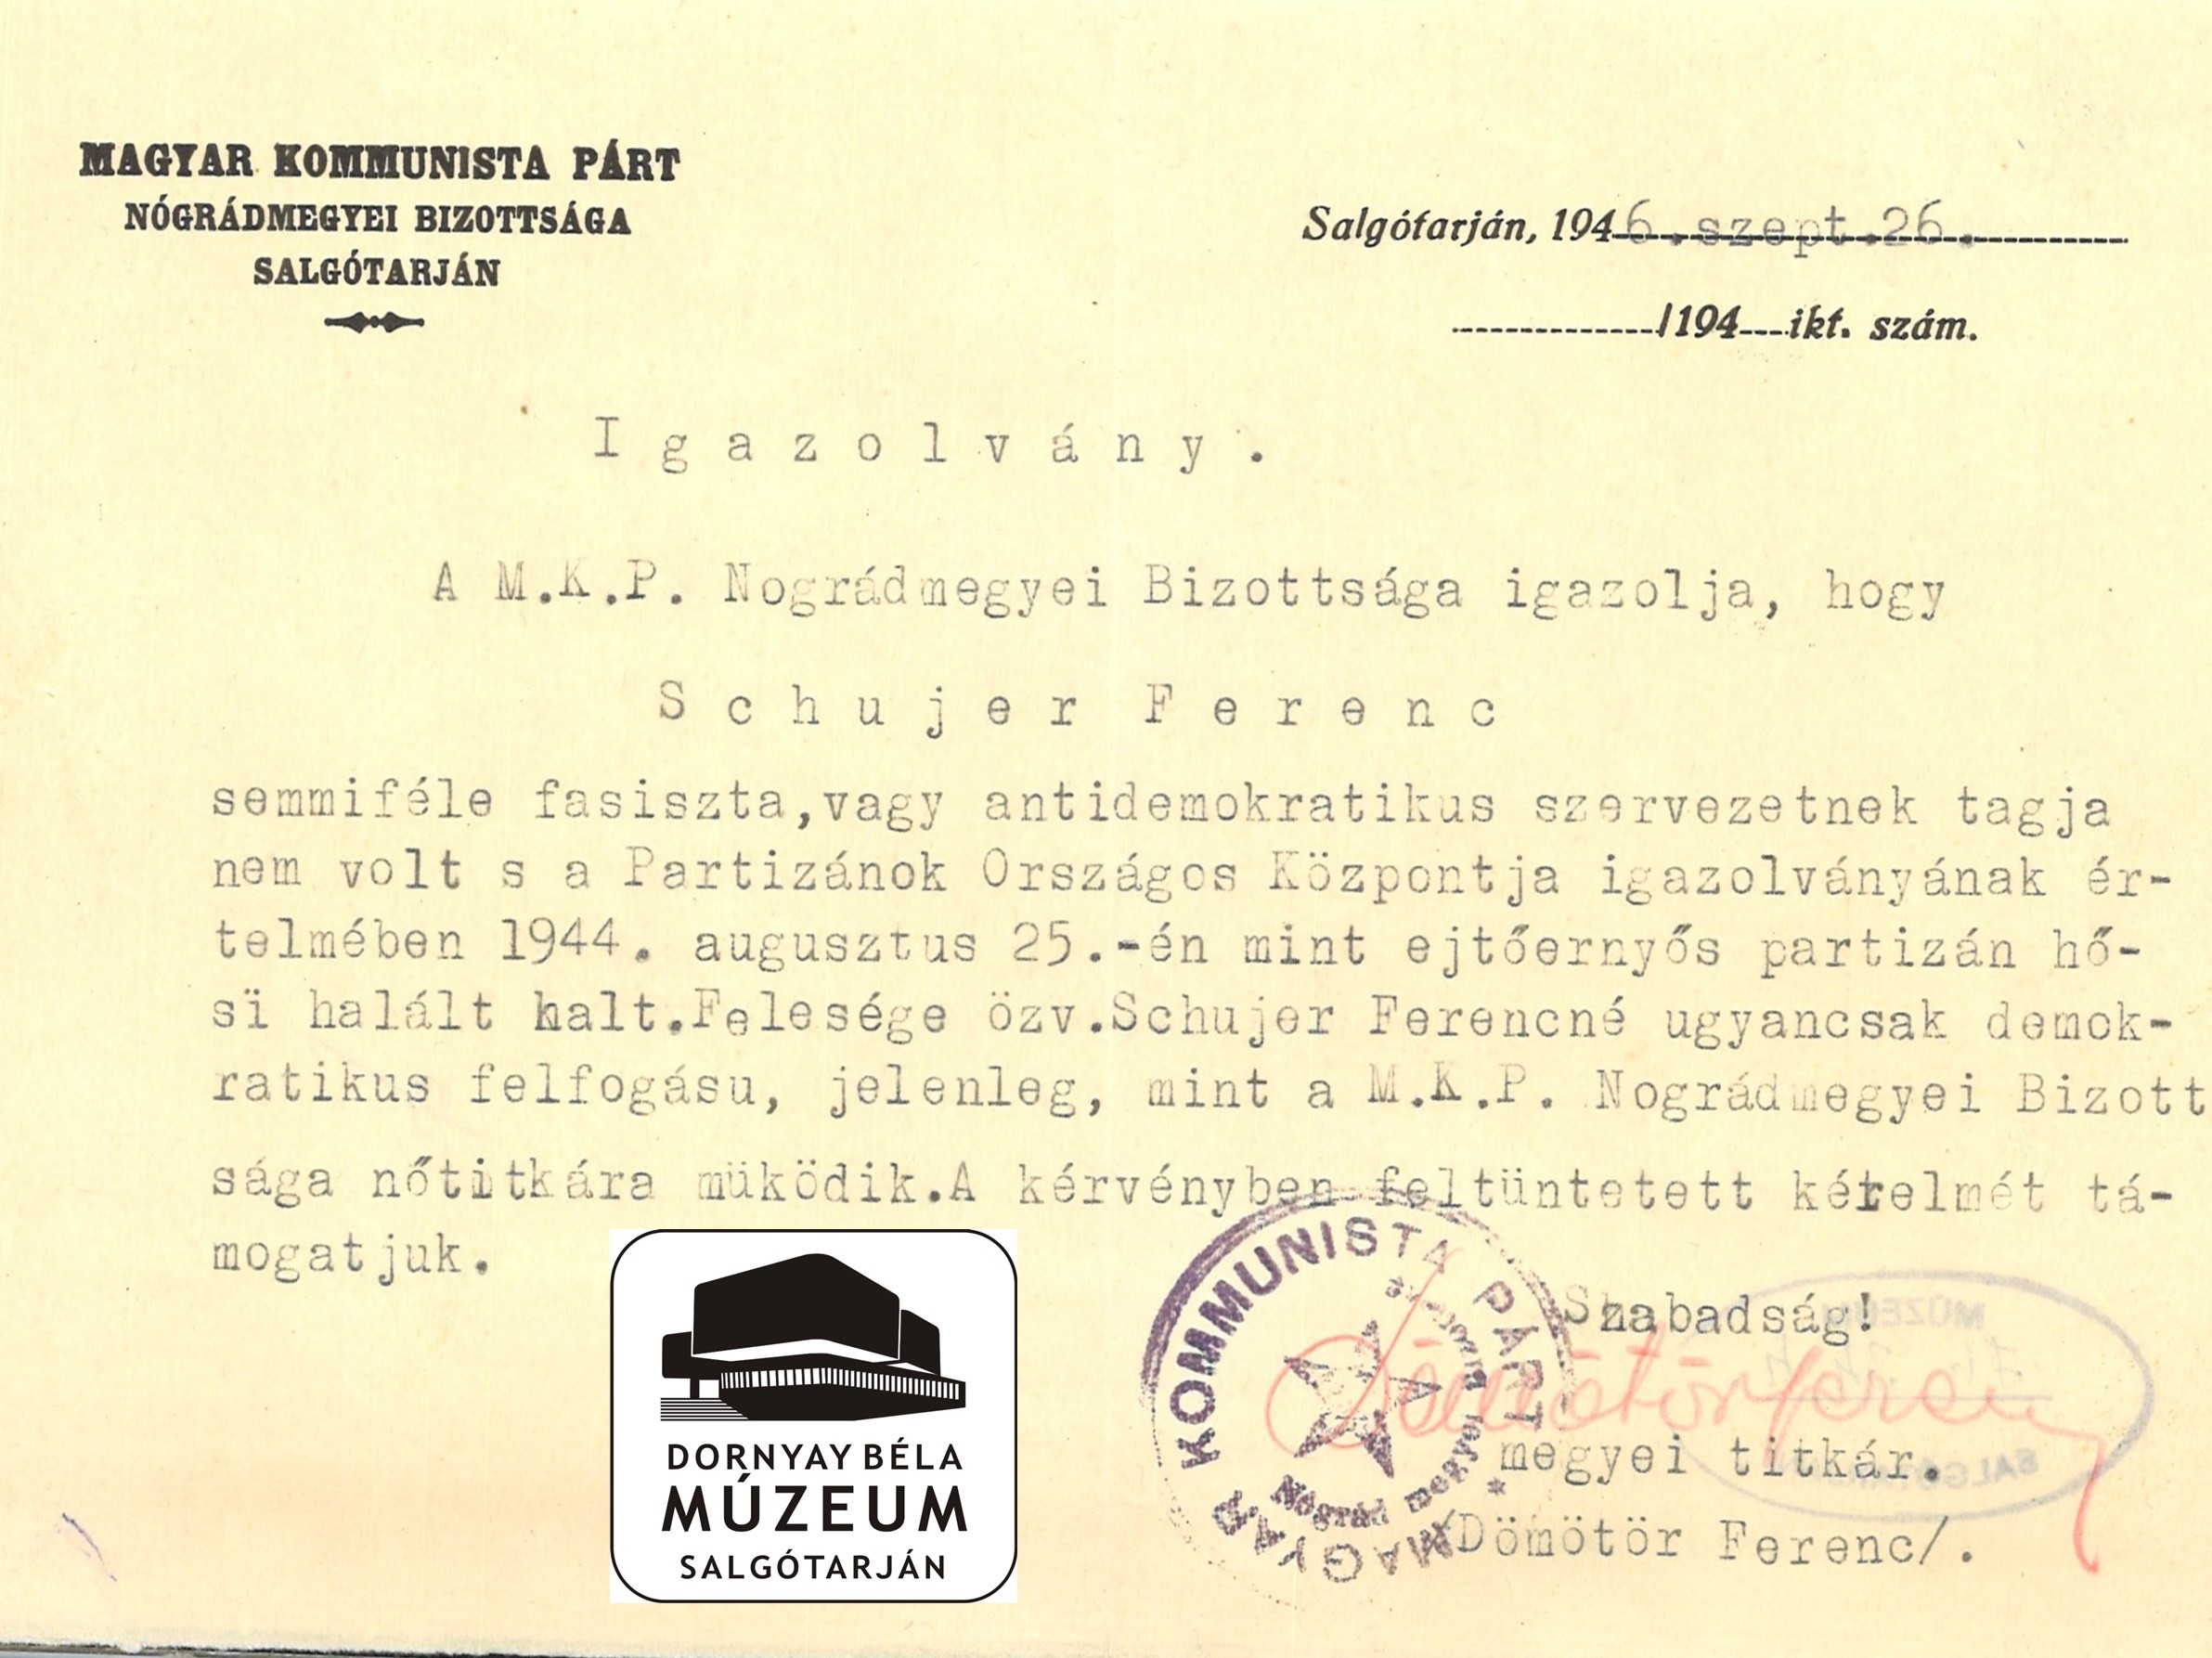 MKP. Nógrád megyei bizottsága igazolja Schujer család demokratikus felfogású (Dornyay Béla Múzeum, Salgótarján CC BY-NC-SA)